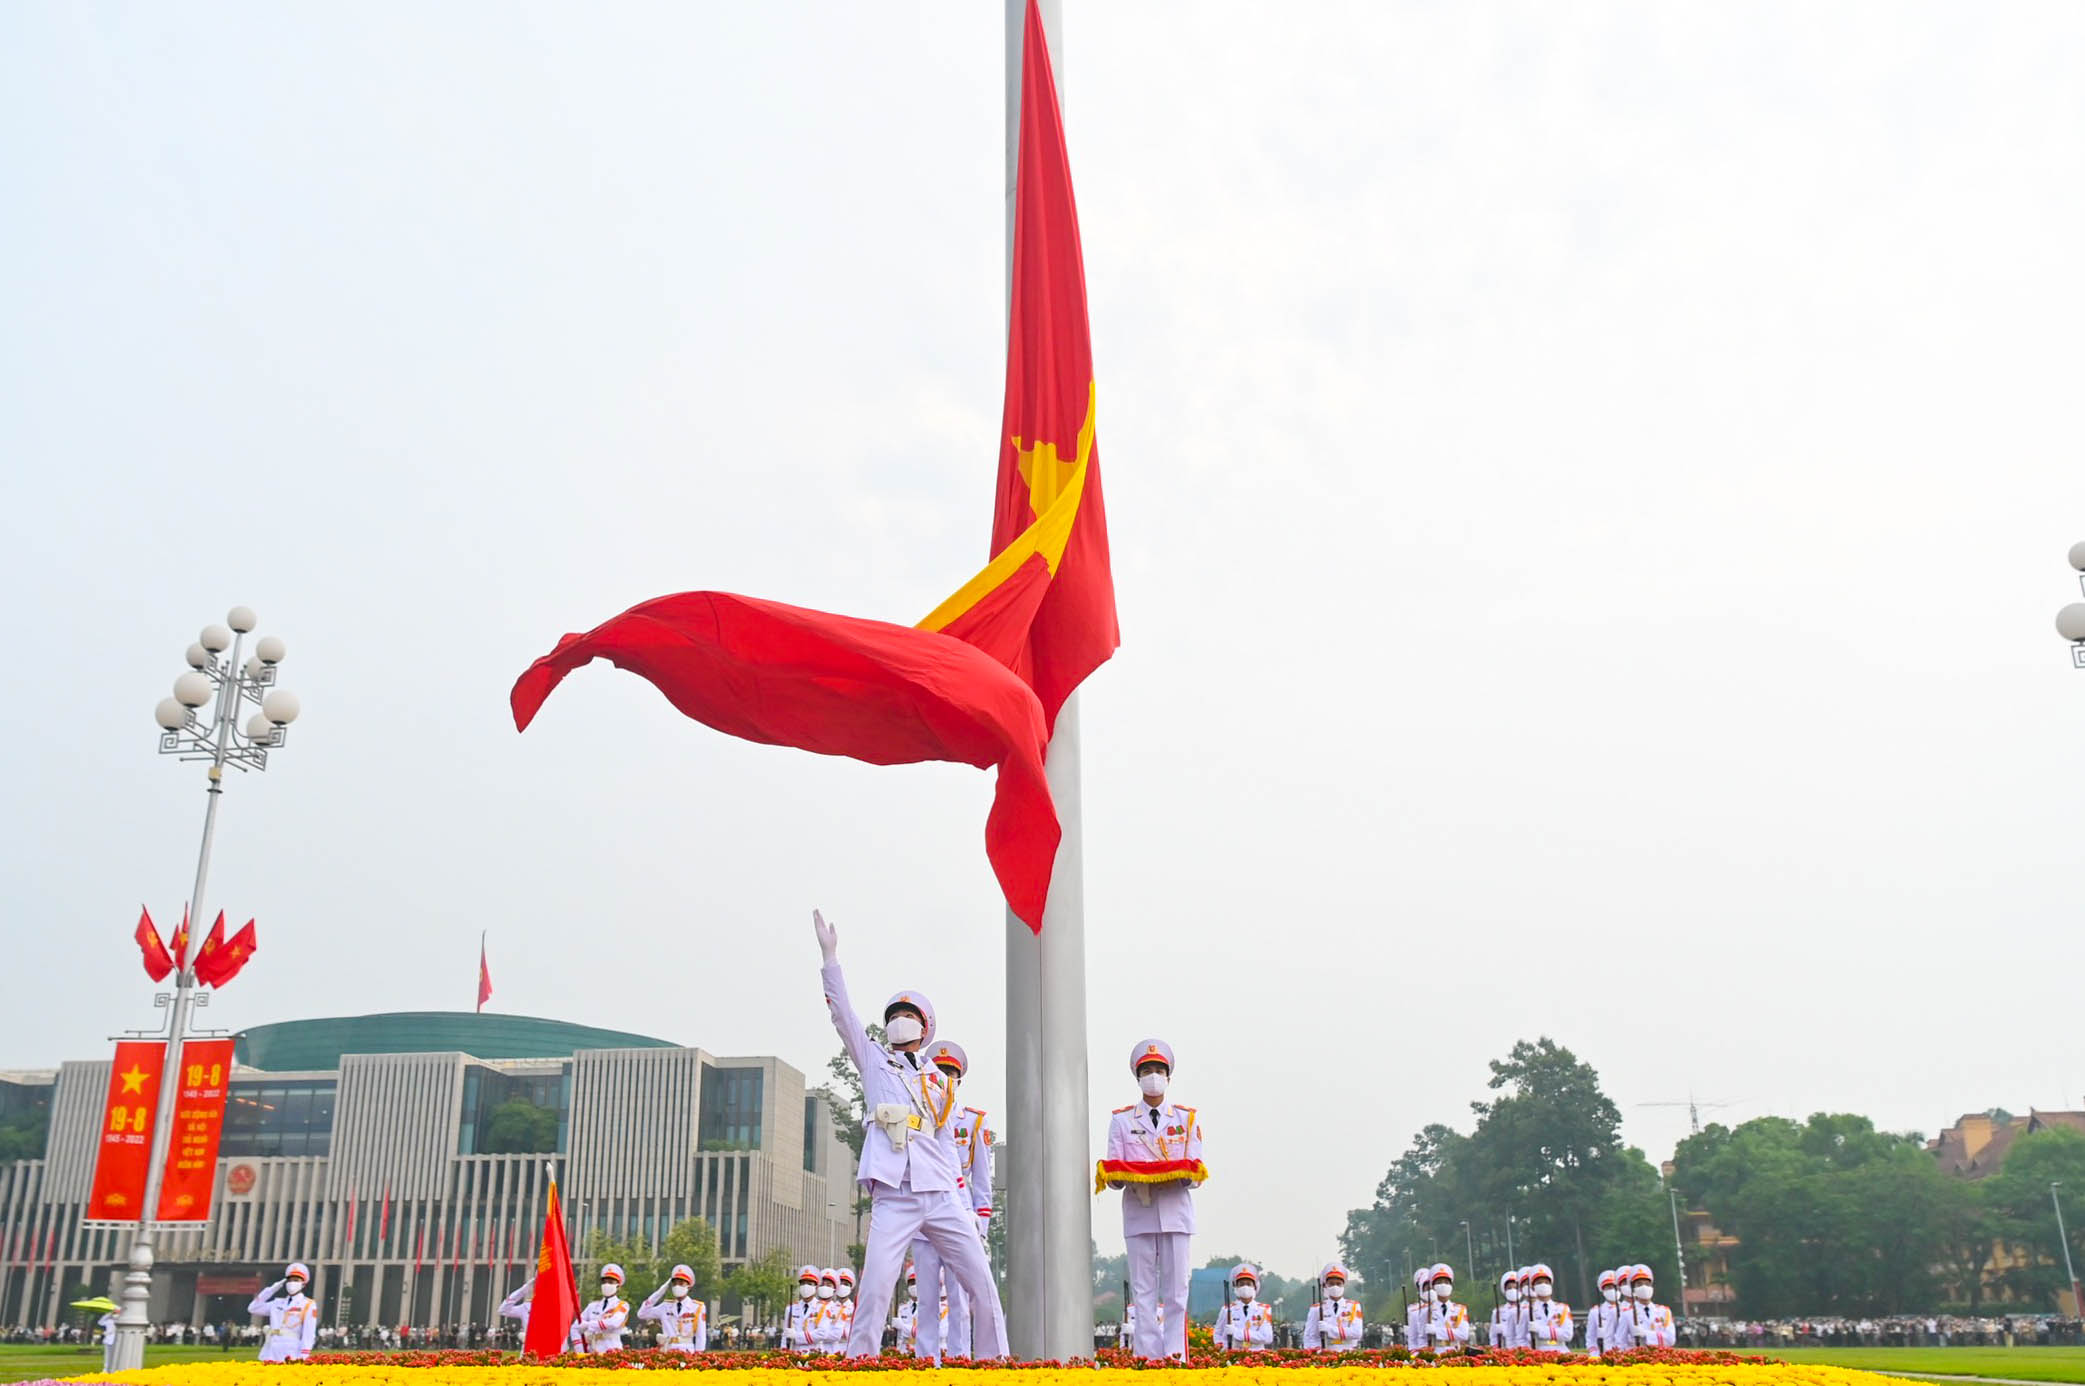 Lãnh đạo: Những người lãnh đạo tài ba là những người đã góp phần vào sự nghiệp xây dựng Tổ quốc. Hãy cùng xem những hình ảnh về các lãnh đạo nổi tiếng trong lịch sử Việt Nam để hiểu thêm về những đóng góp và tầm quan trọng của họ trong lịch sử đất nước.